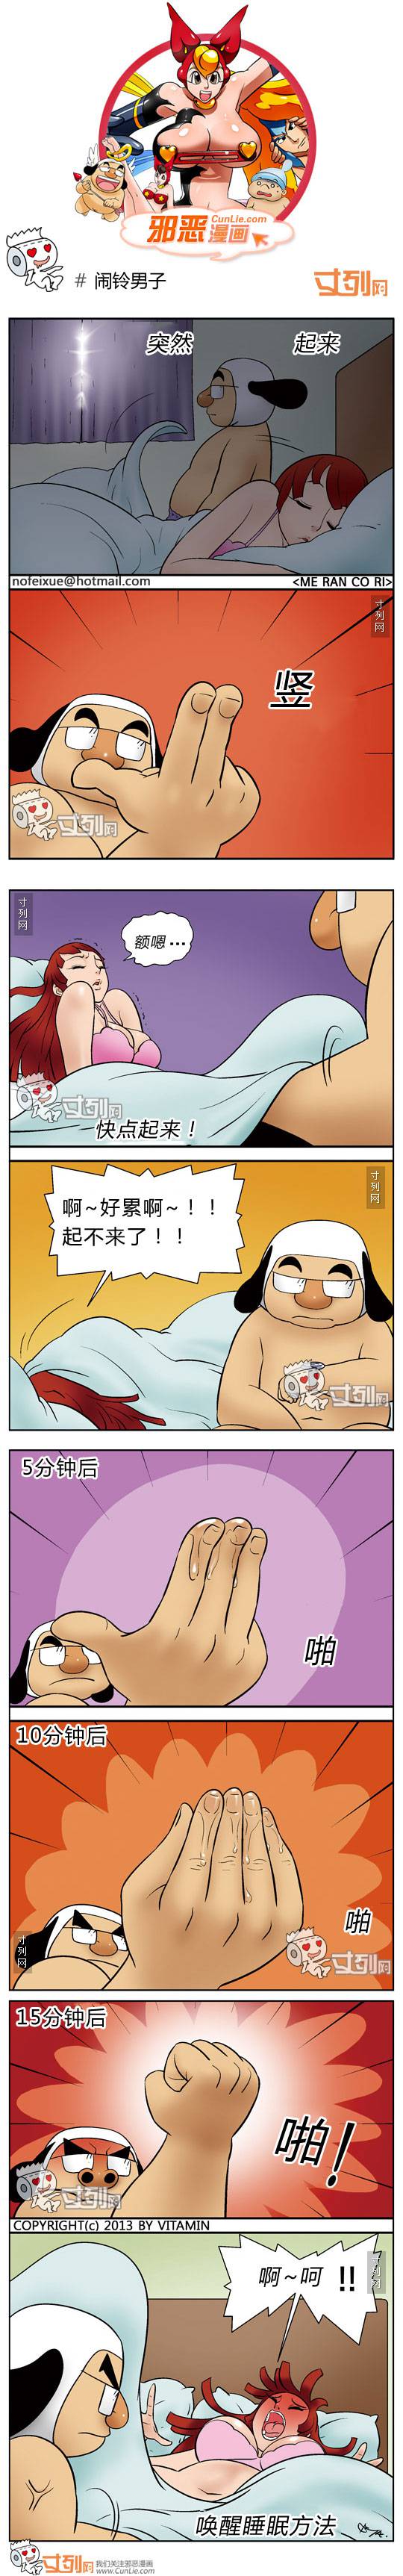 邪恶漫画爆笑囧图第144刊：暴力与温柔